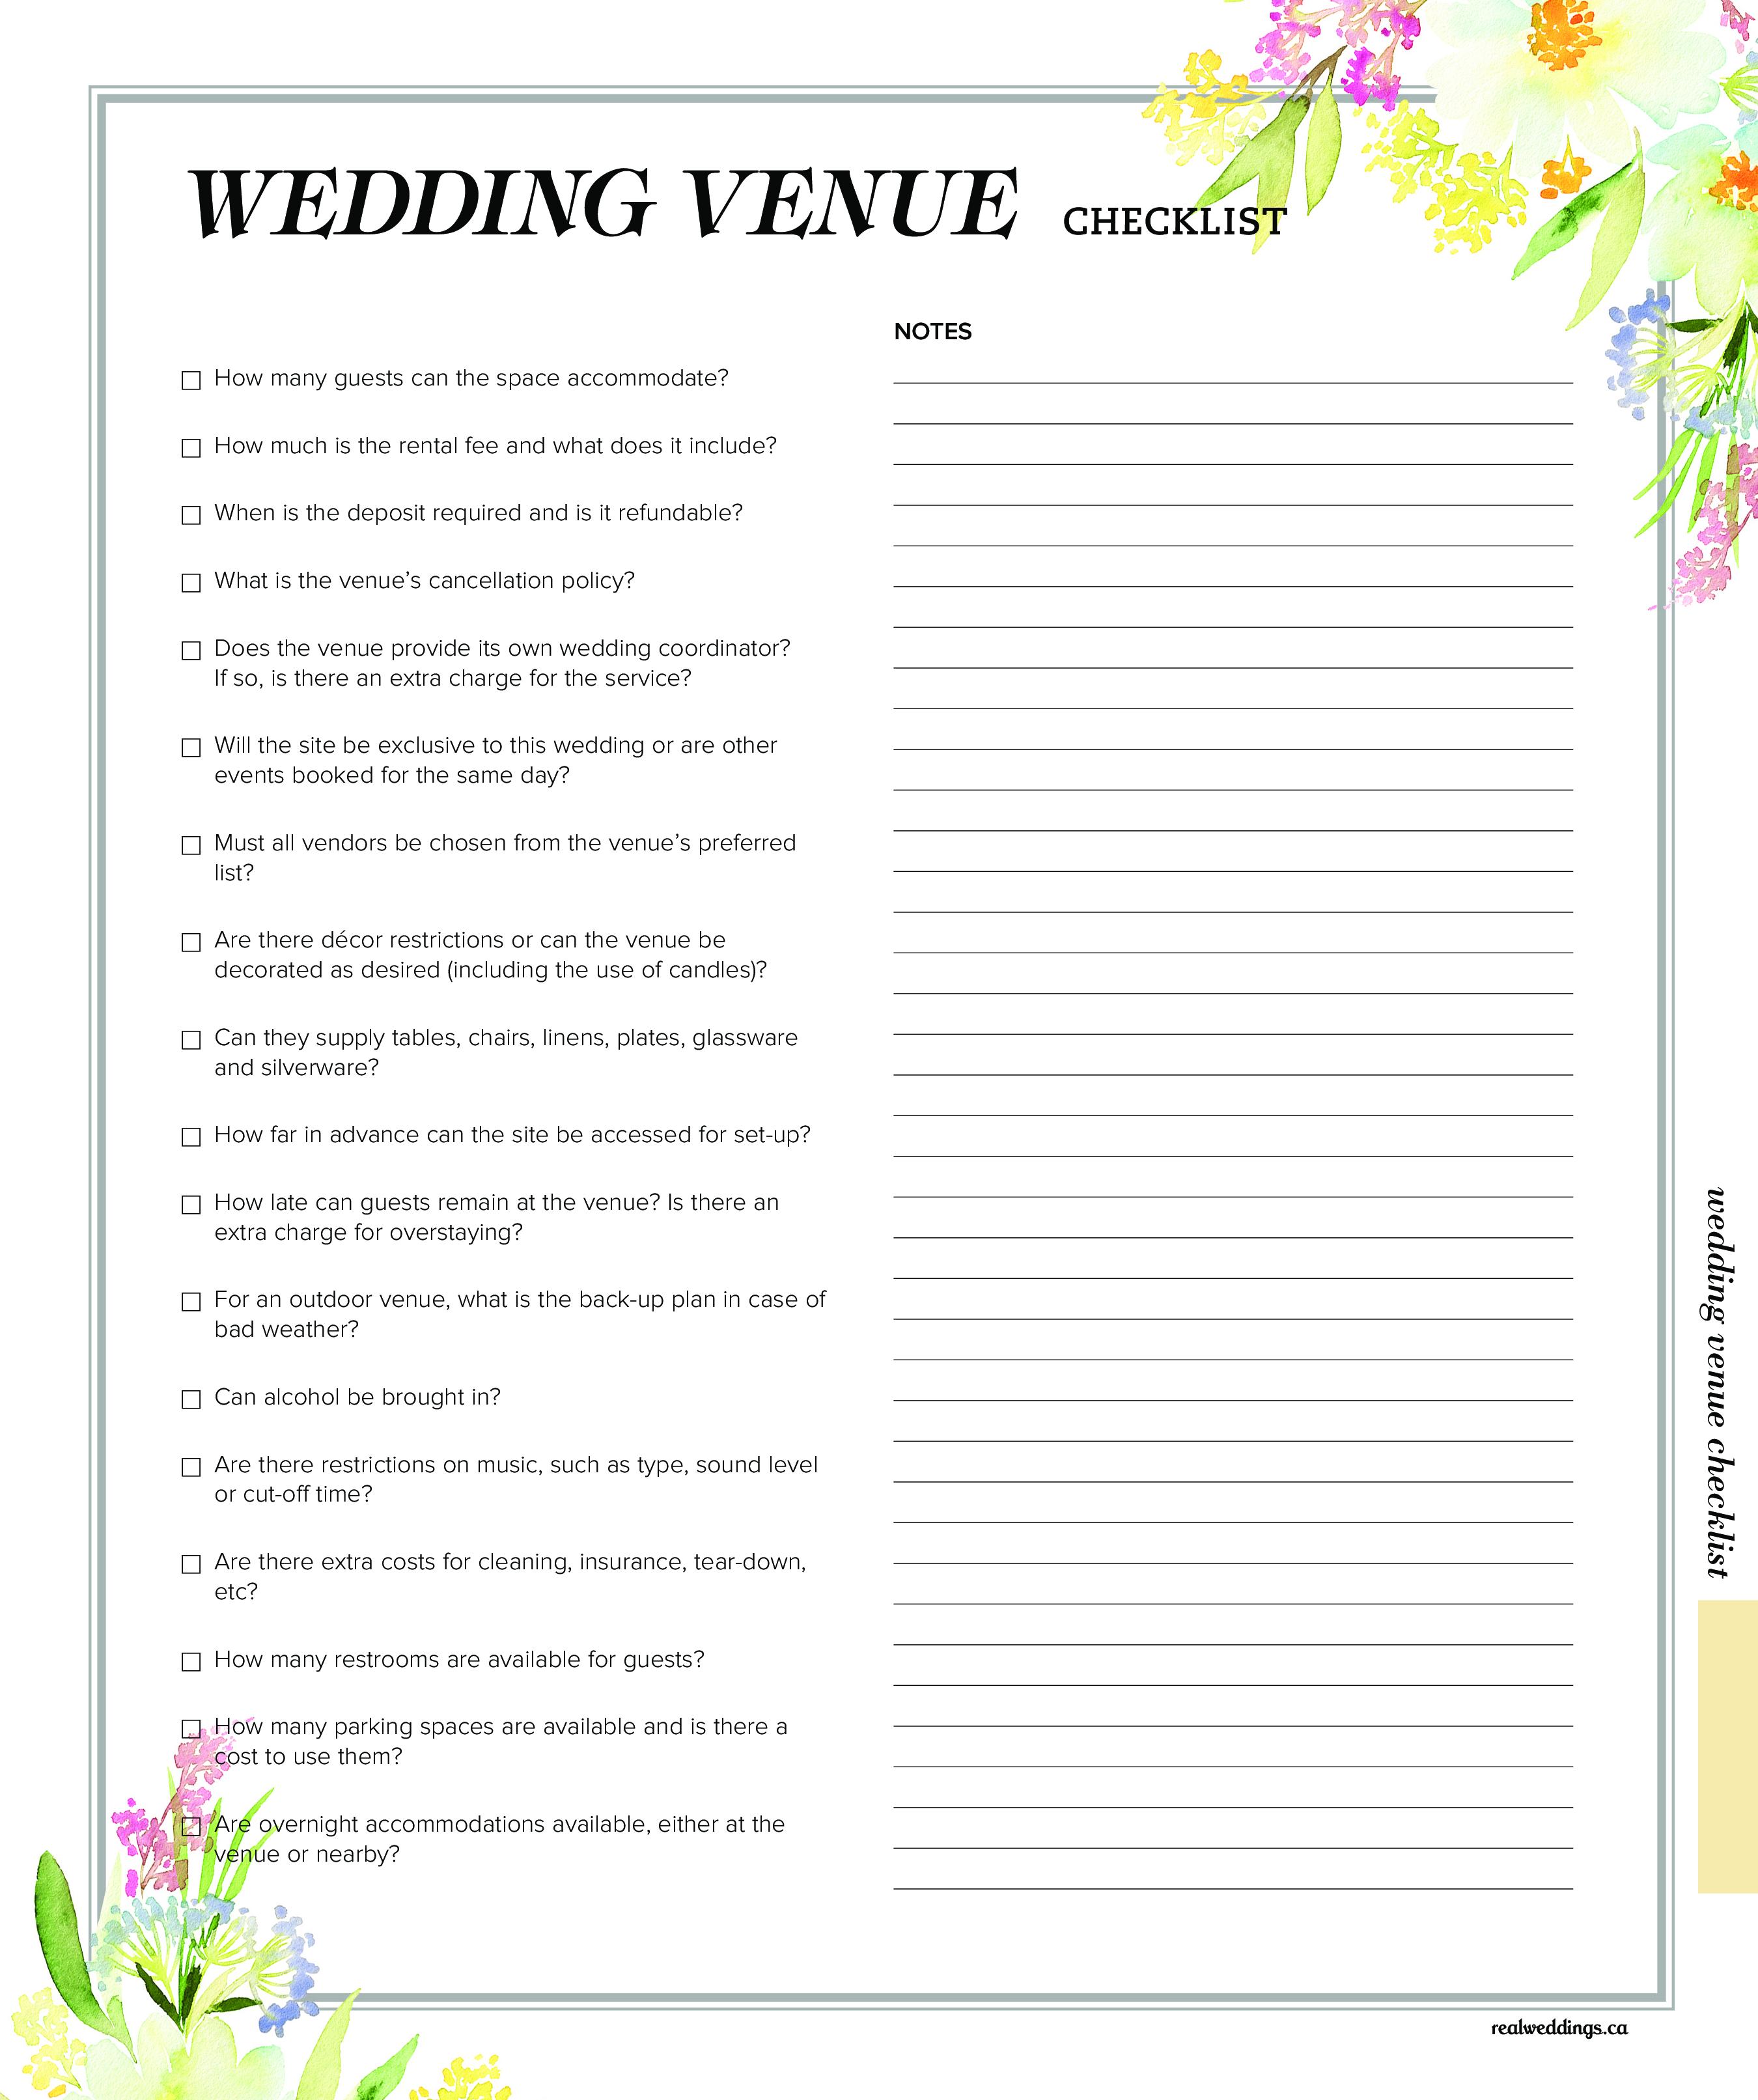 Wedding Venue Checklist main image